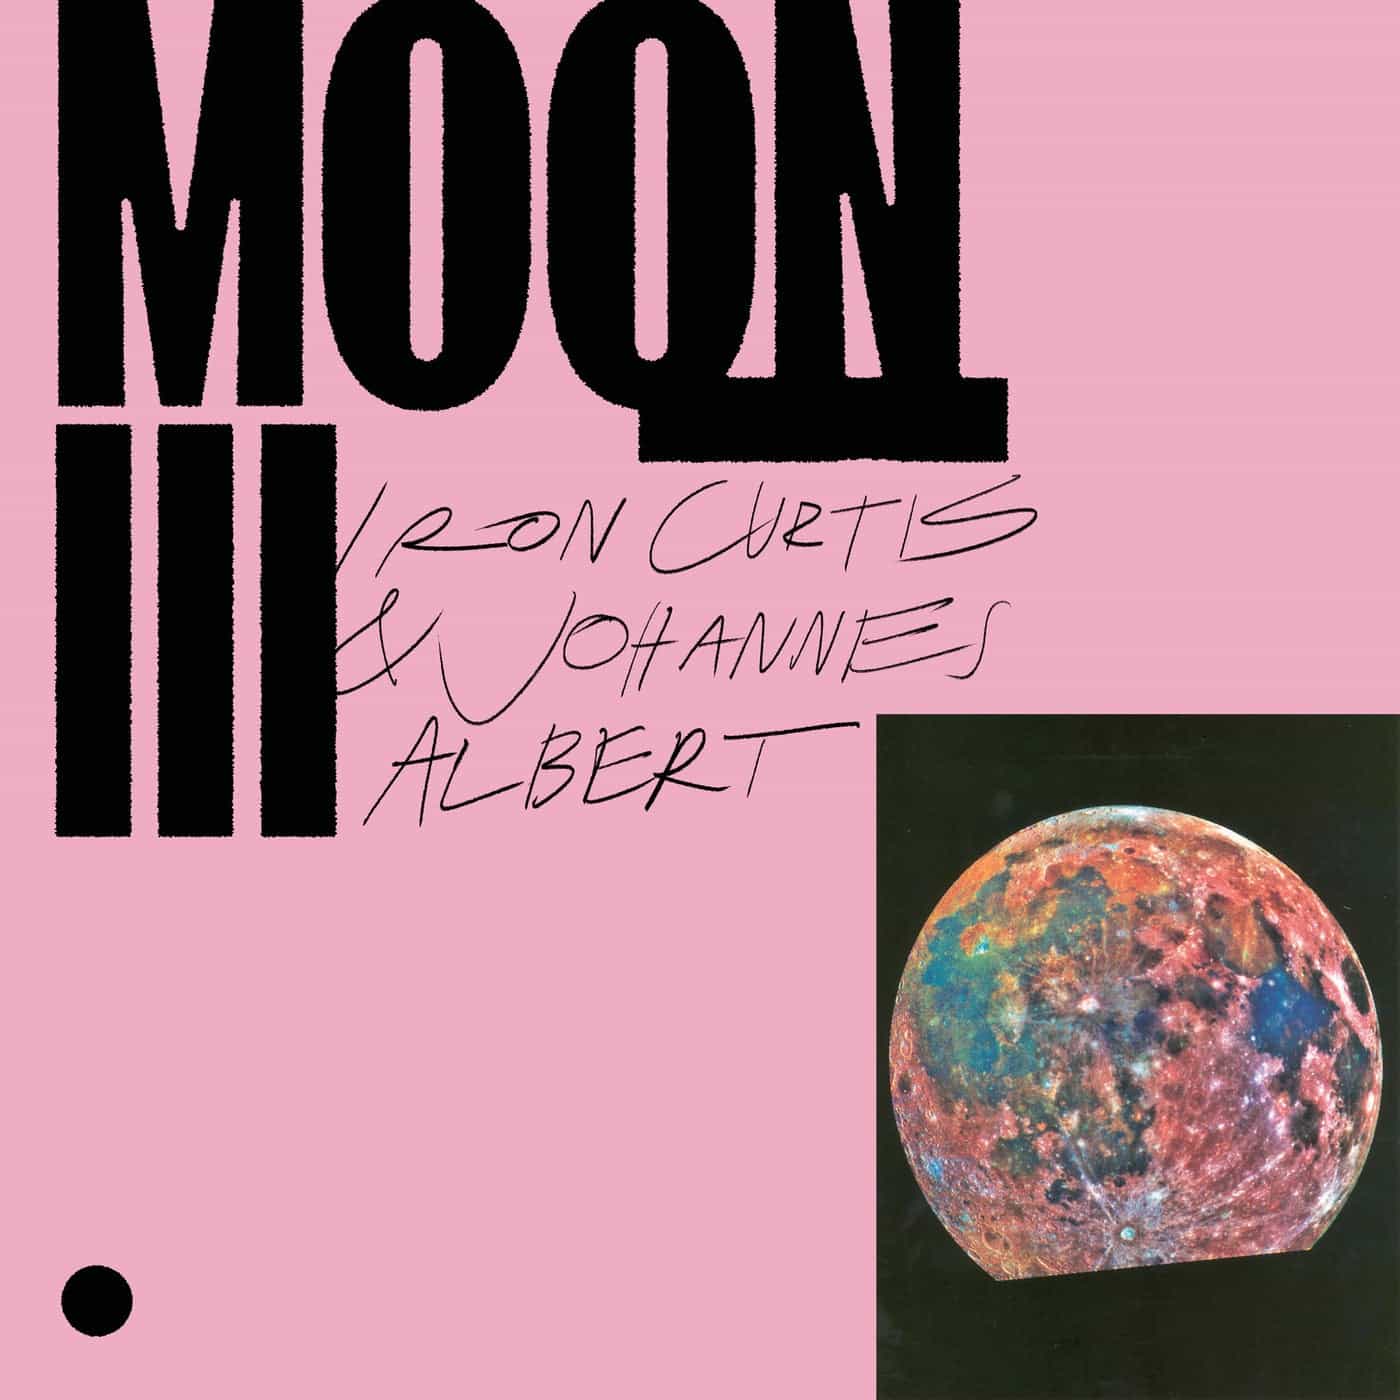 Download VA - Moon III on Electrobuzz